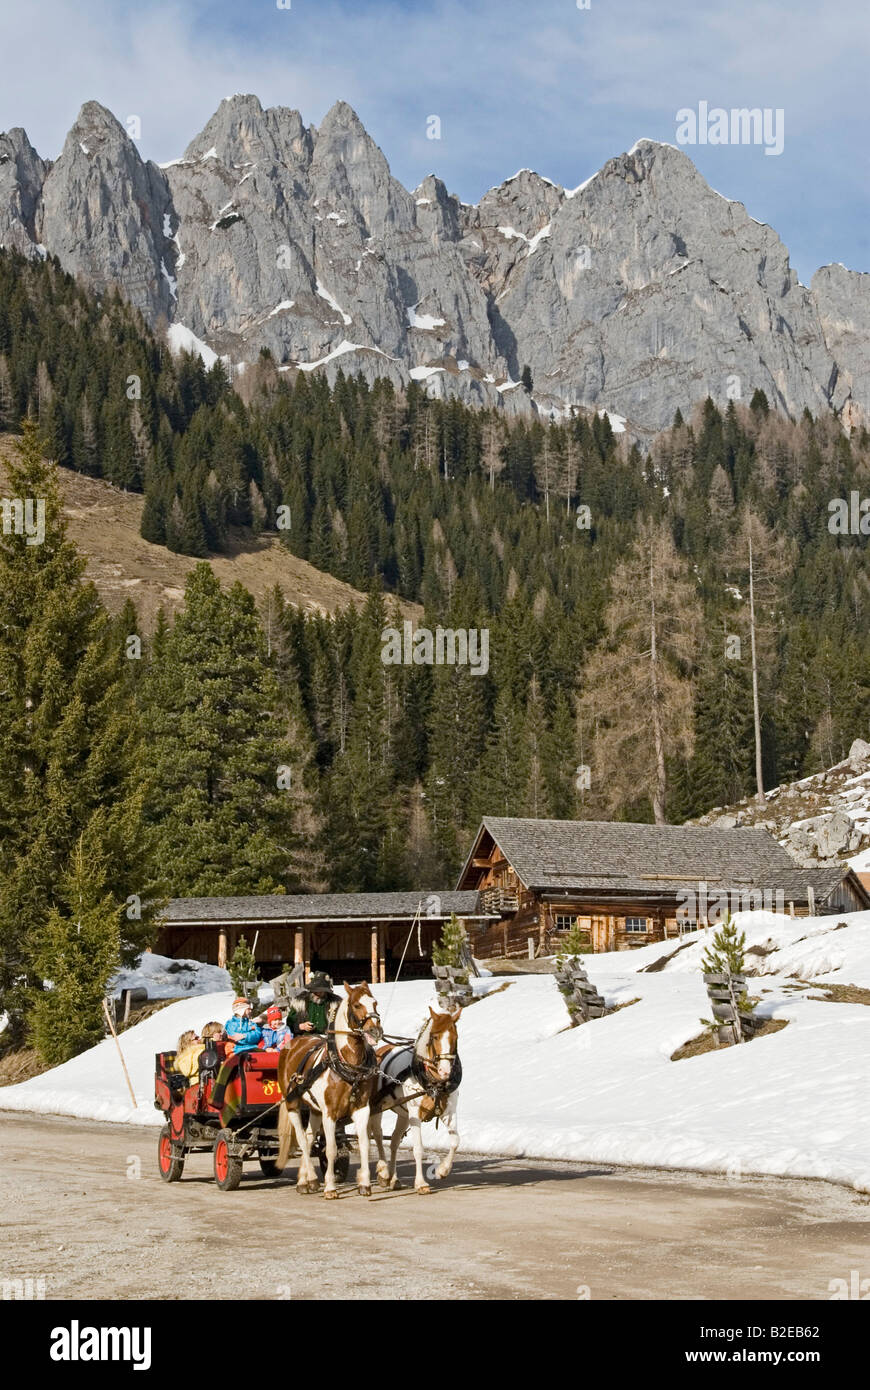 Panier cheval sur route avec des montagnes en arrière-plan Alpes Hoher Dachstein Autriche Banque D'Images